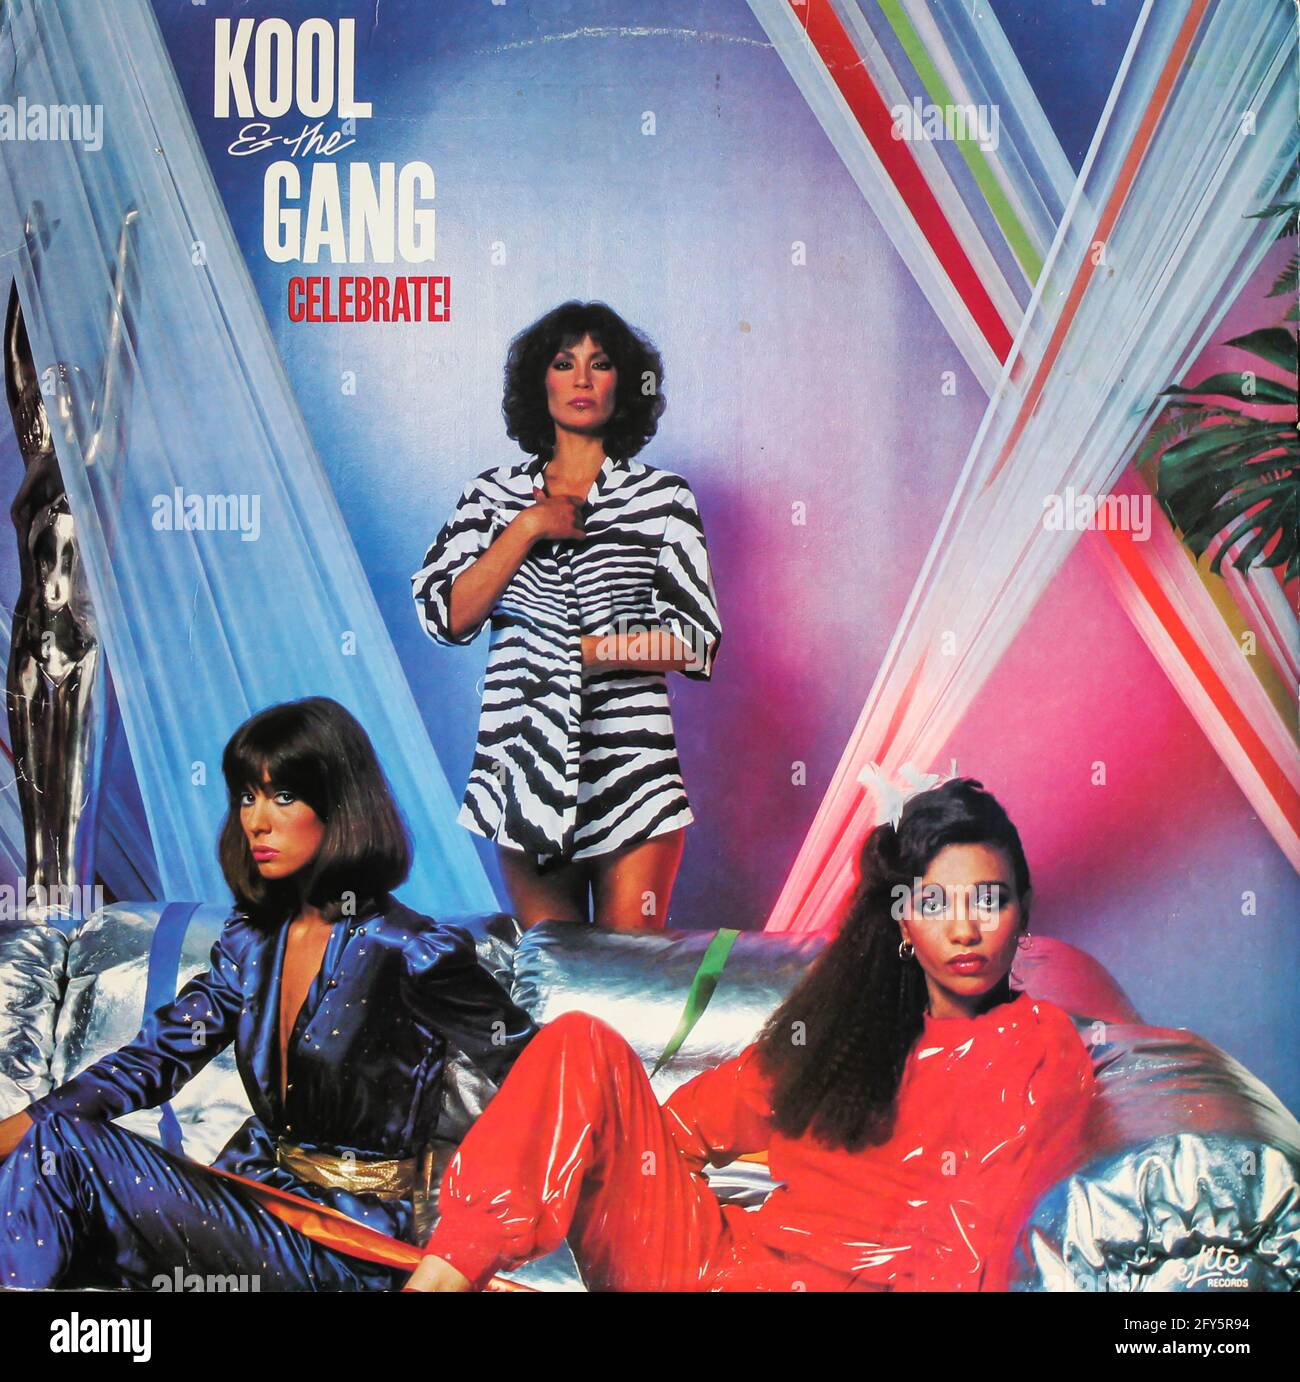 Festeggia! È il dodicesimo album in studio della band americana Kool & The Gang. Album su disco LP vinile, copertina album. Foto Stock